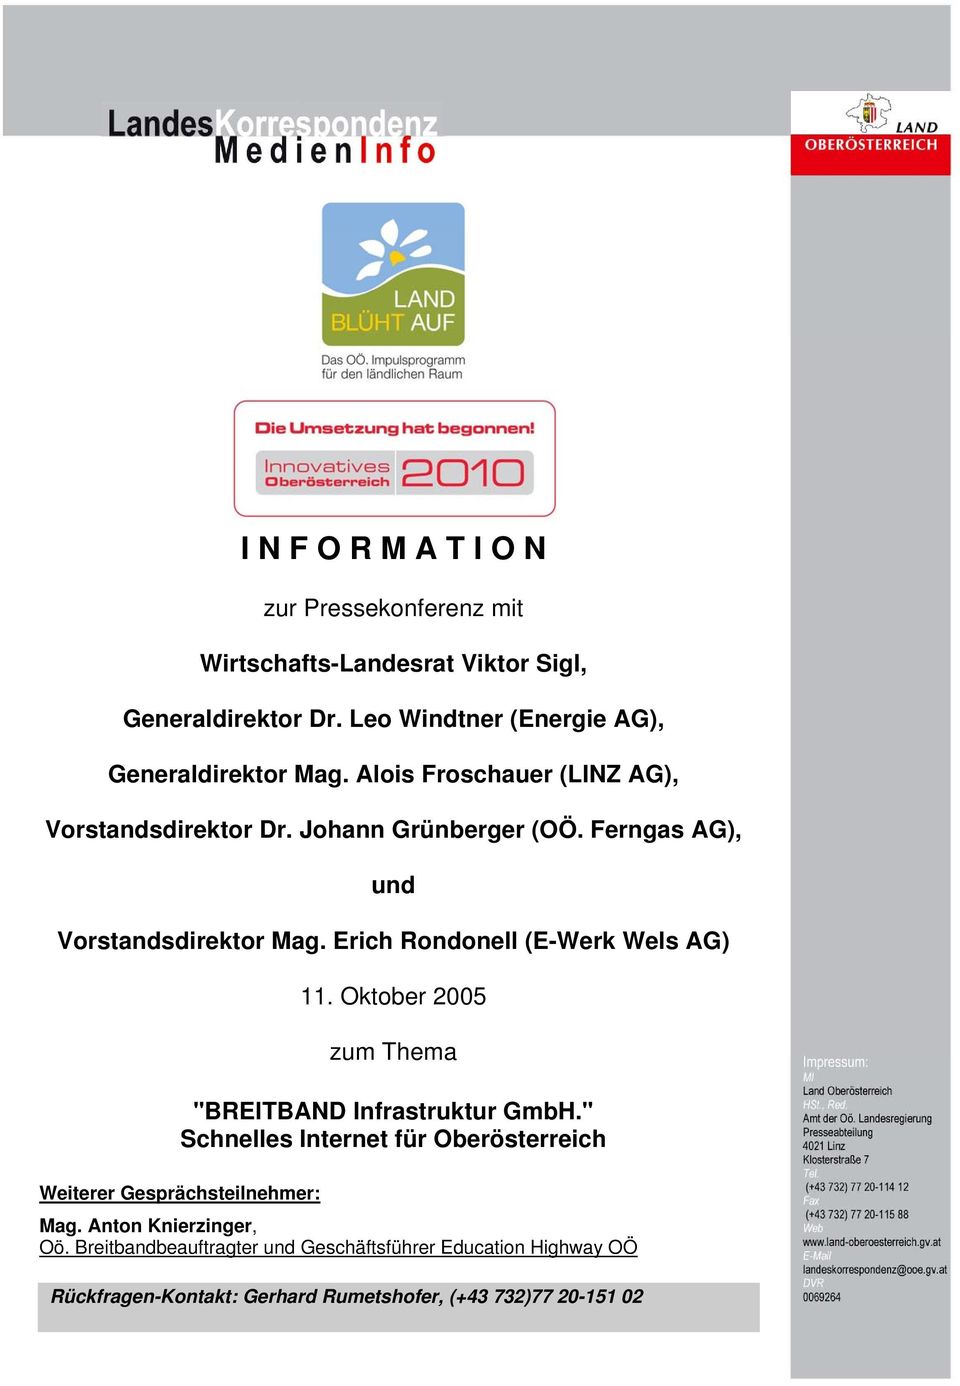 Ferngas AG), und Vorstandsdirektor Mag. Erich Rondonell (E-Werk Wels AG) 11. Oktober 2005 zum Thema "BREITBAND Infrastruktur GmbH.